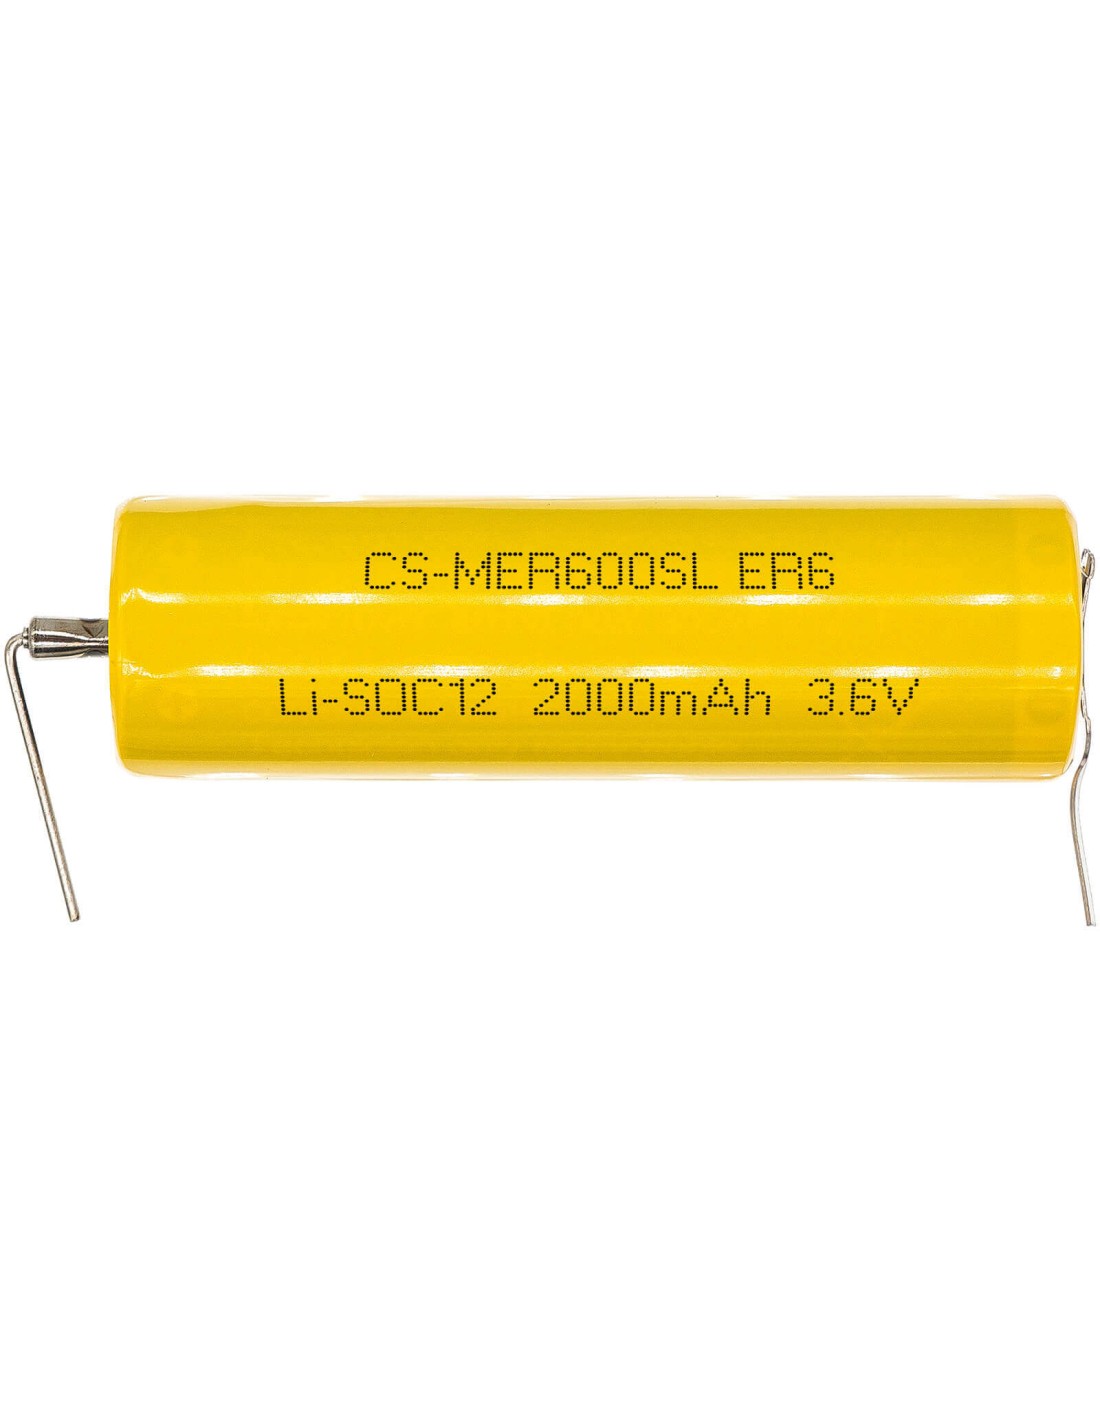 Battery for Maxell, Er6 3.6V, 2000mAh - 7.20Wh